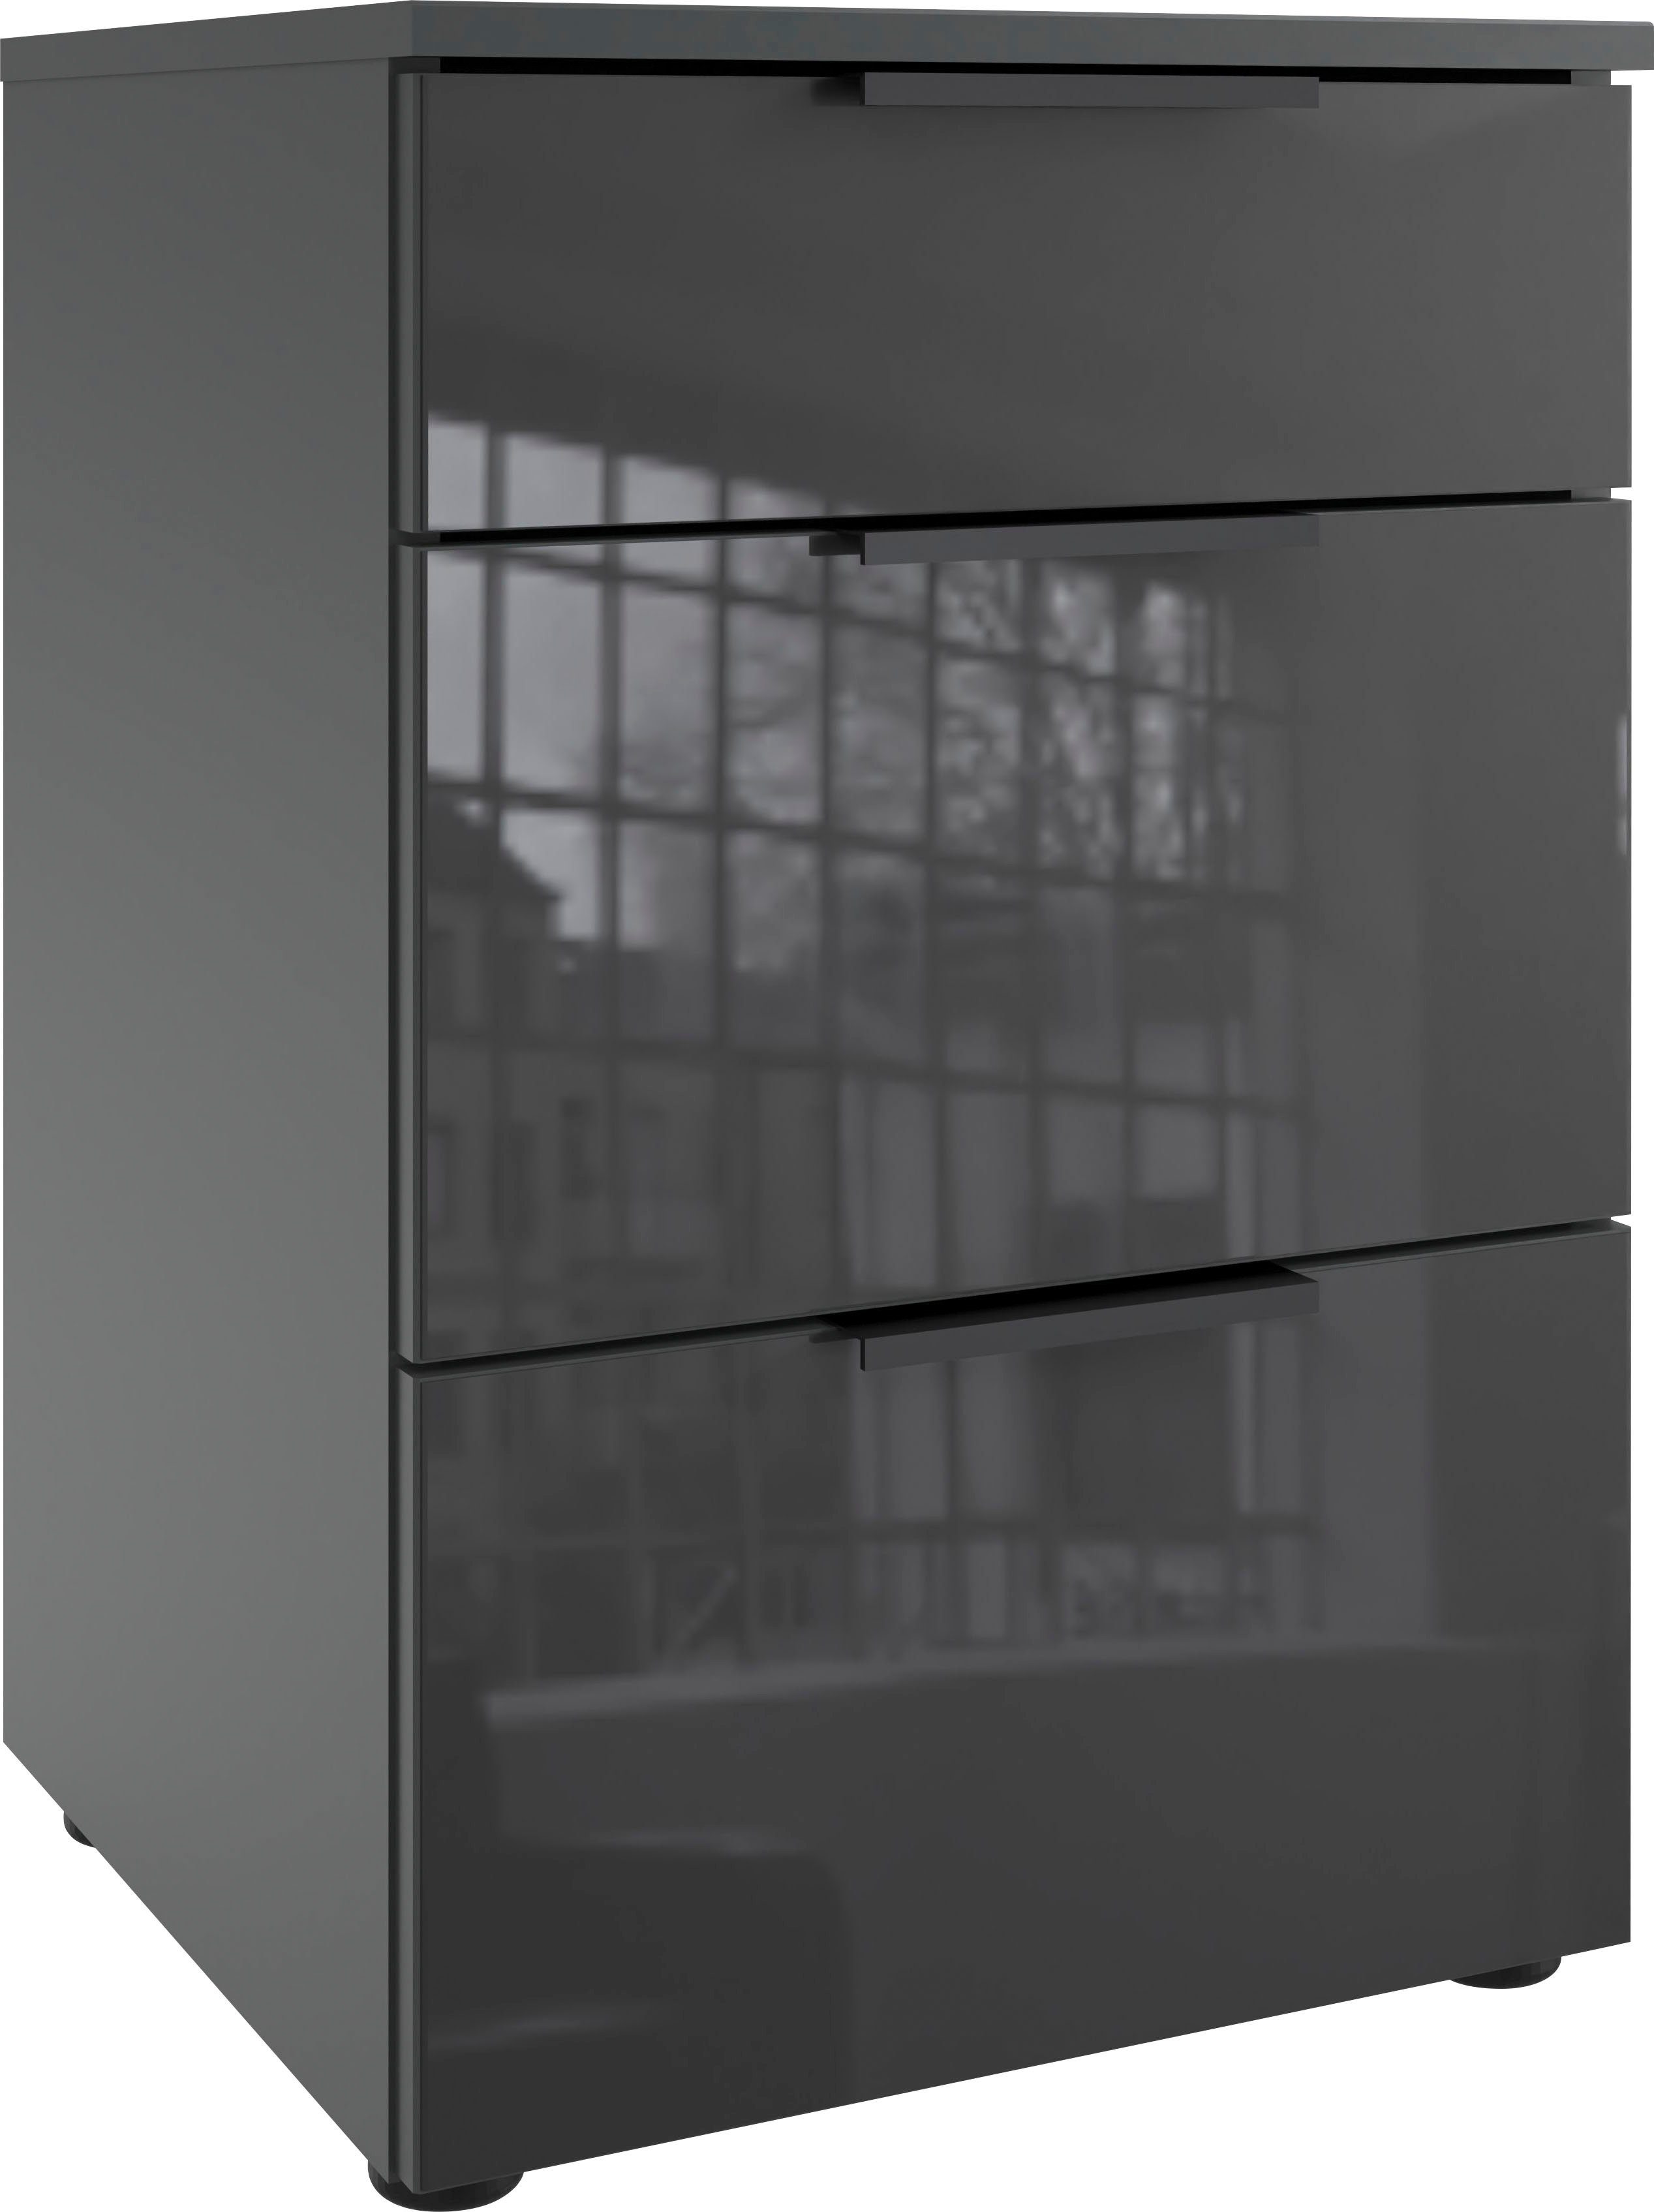 wimex nachtkastje level36 black c met glazen elementen aan de voorkant, soft-close functie, 41 cm breed wit